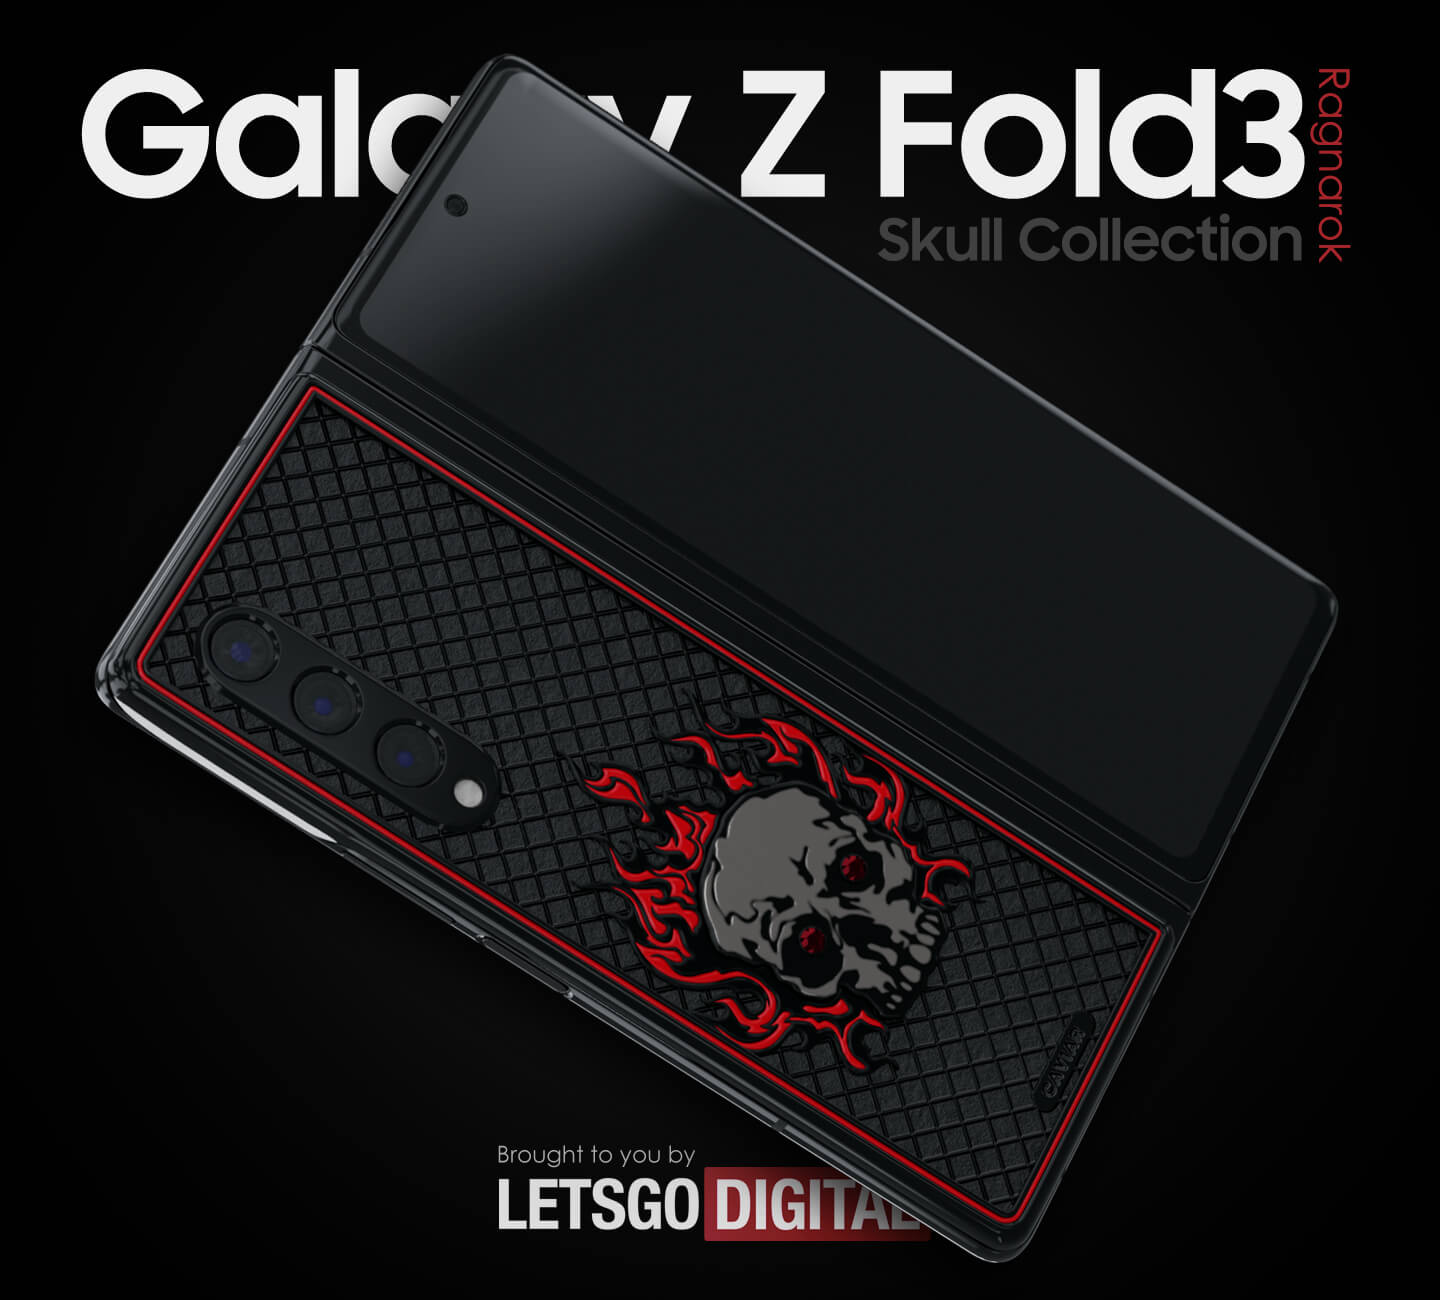 Samsung Galaxy Z Fold 3 Limited Edition